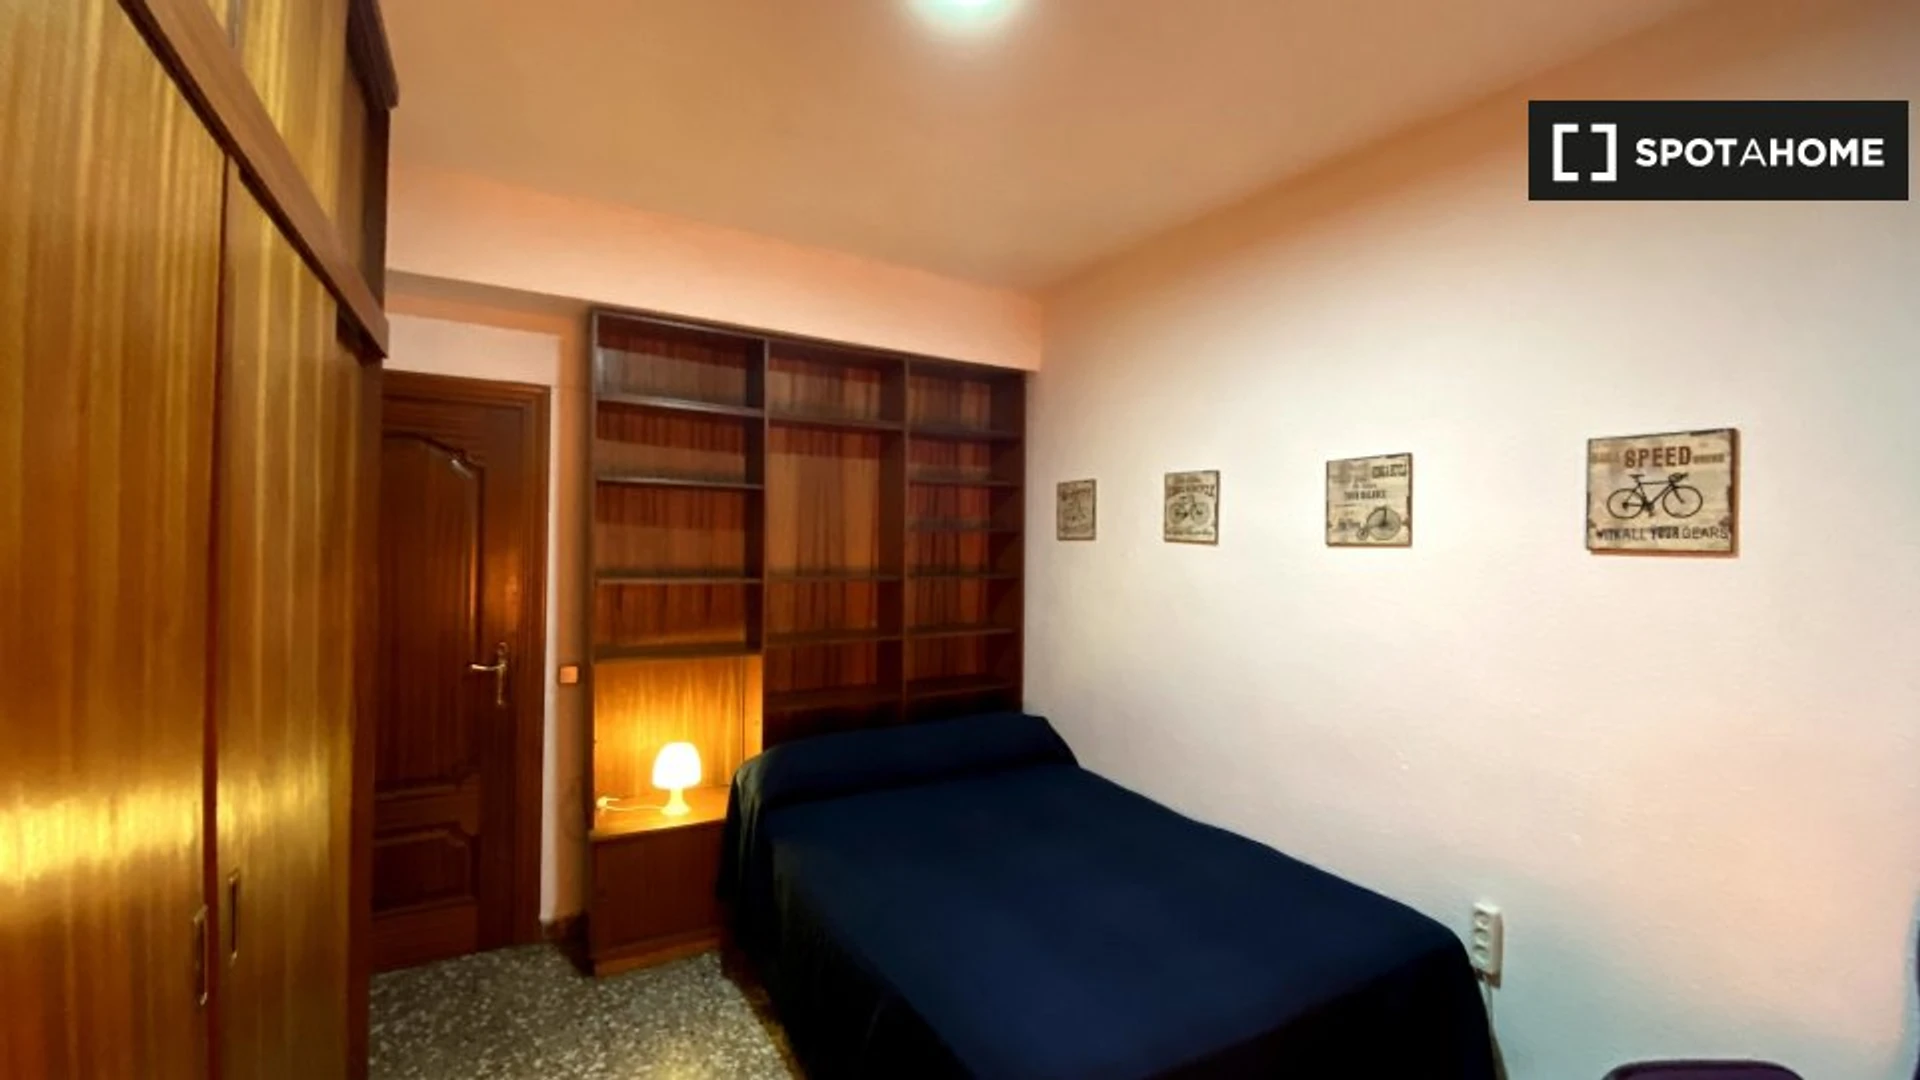 Pokój do wynajęcia z podwójnym łóżkiem w Kartagina